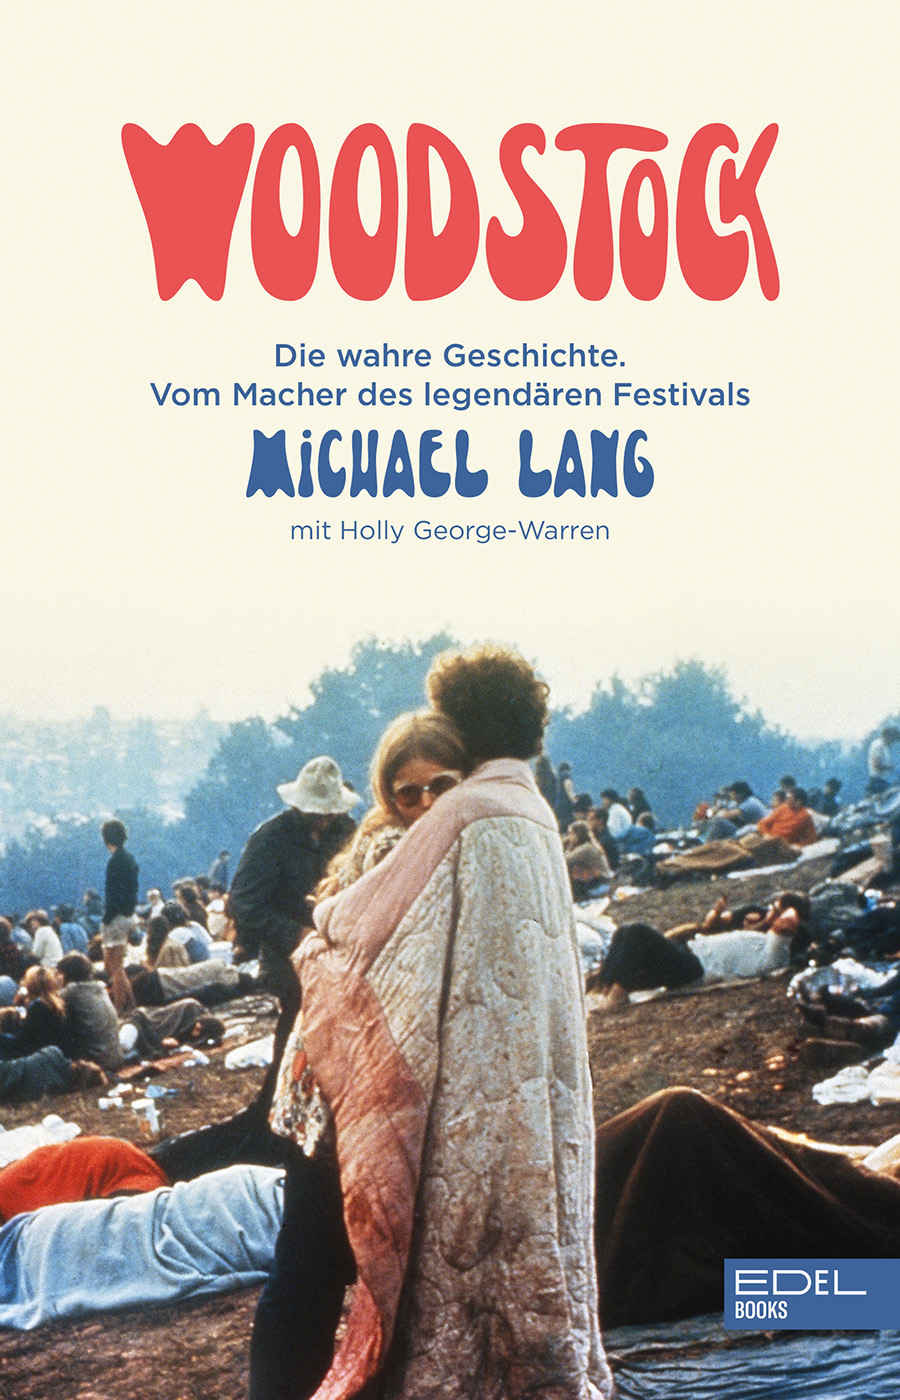 Michael Lang erzählt die wahre Geschichte um den Mythos Woodstock